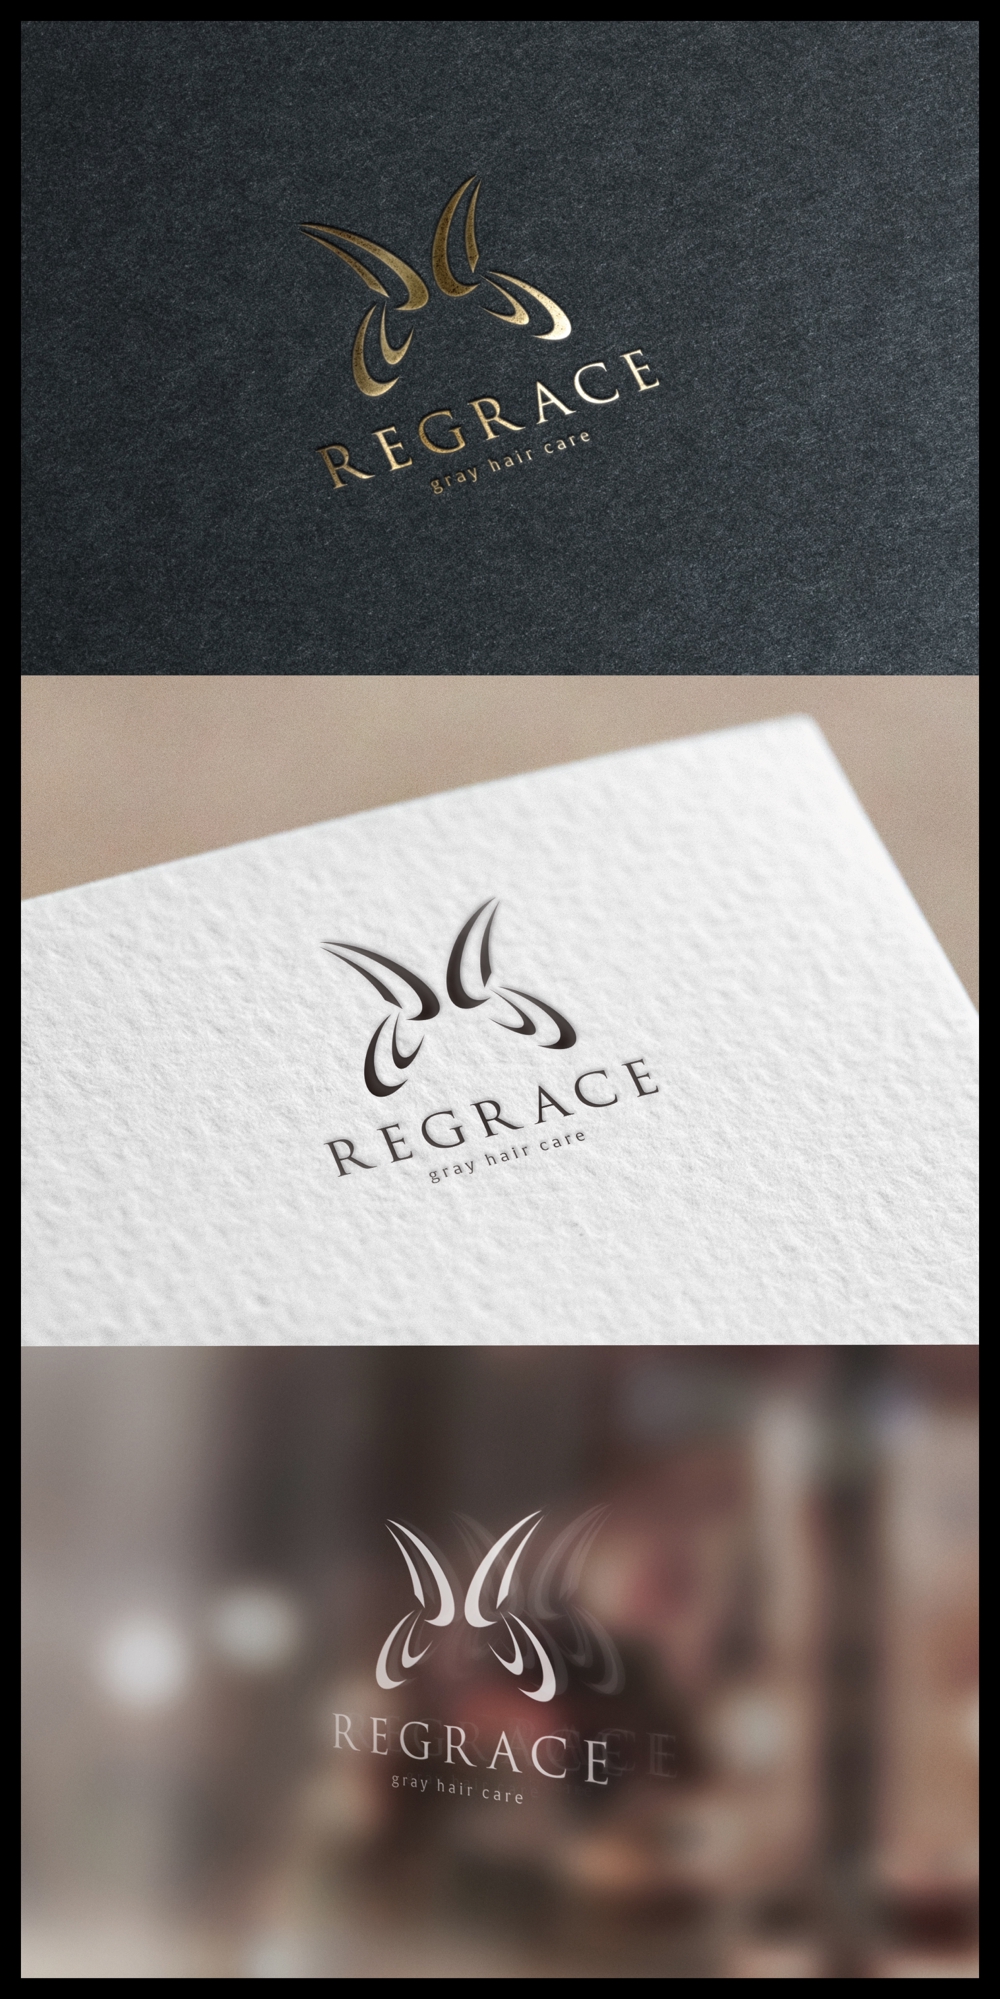 REGRACE_logo01_01.jpg